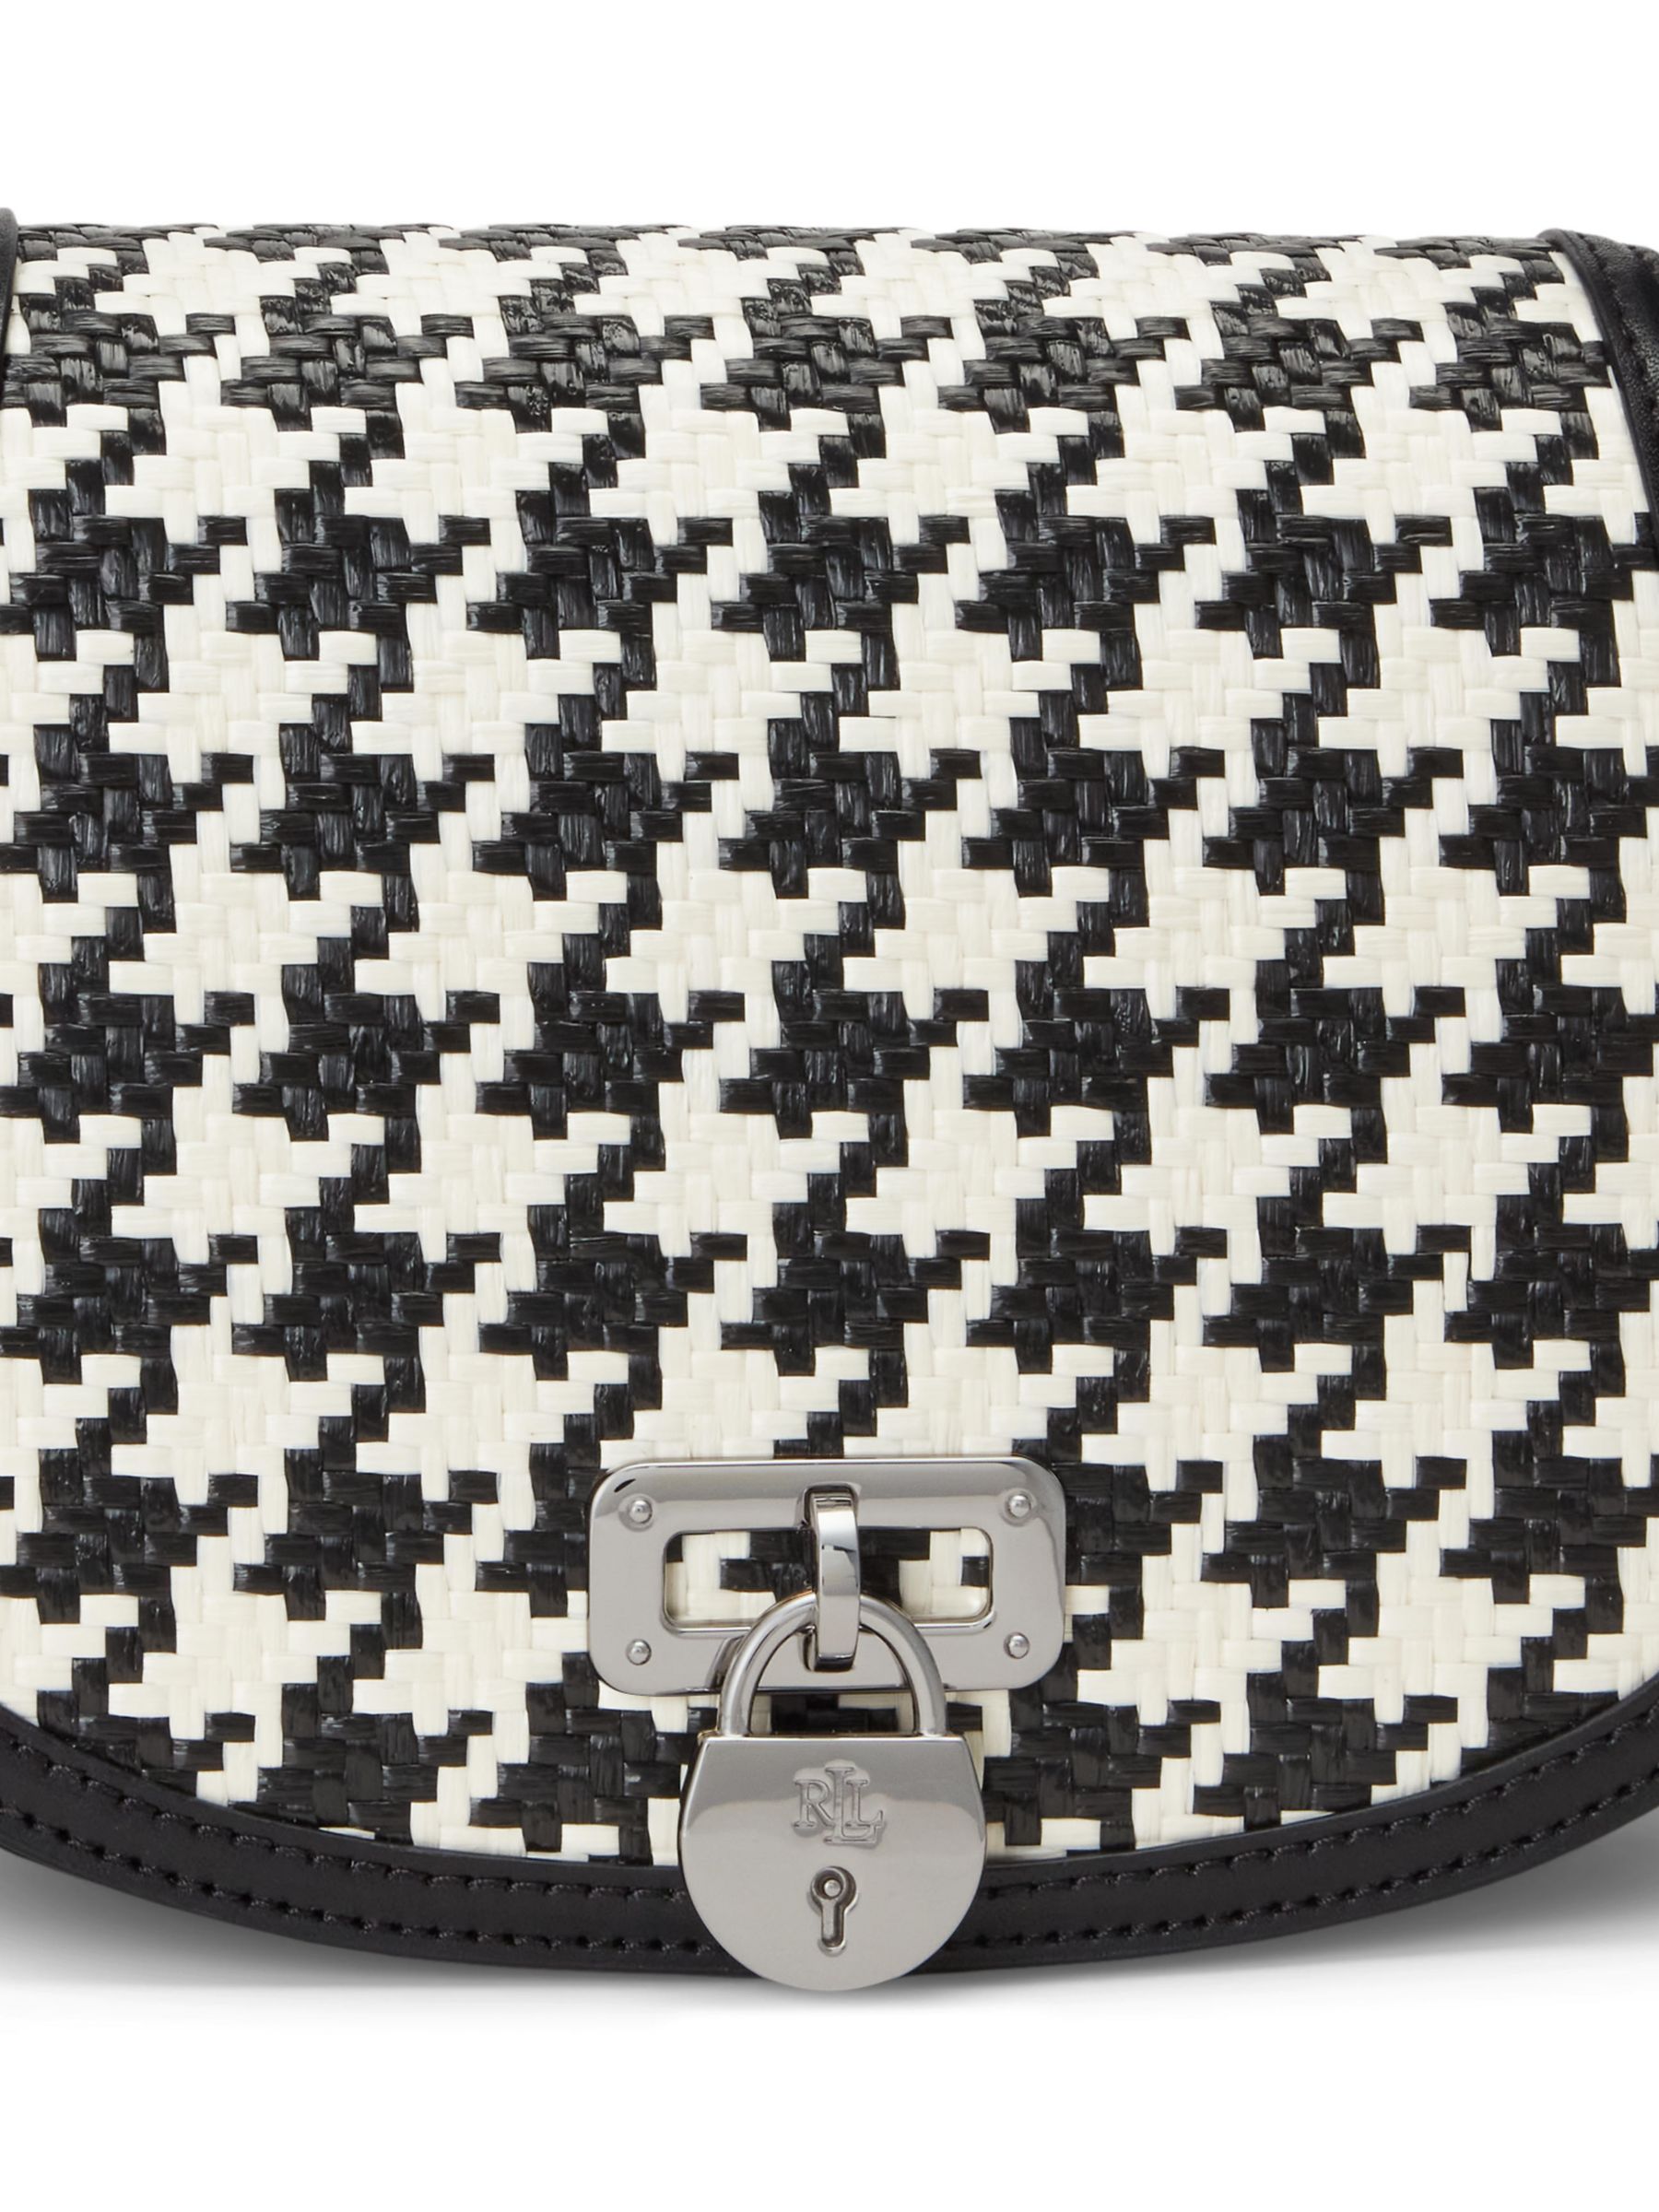 Buy Lauren Ralph Lauren Tanner Houndstooth Cross Body Bag, Black/Multi Online at johnlewis.com